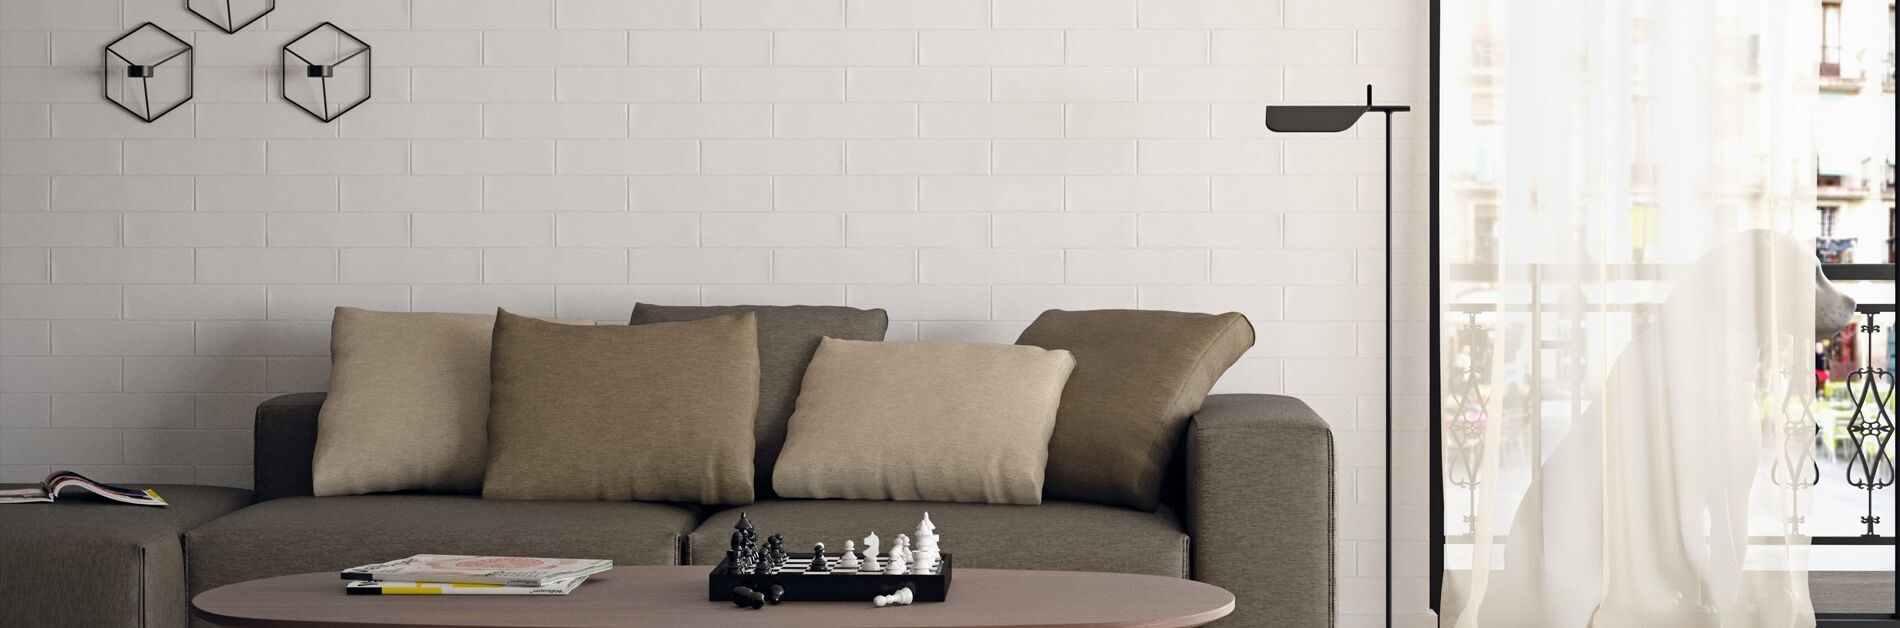 Ein braunes Sofa vor einer Wand mit hellen Fliesen